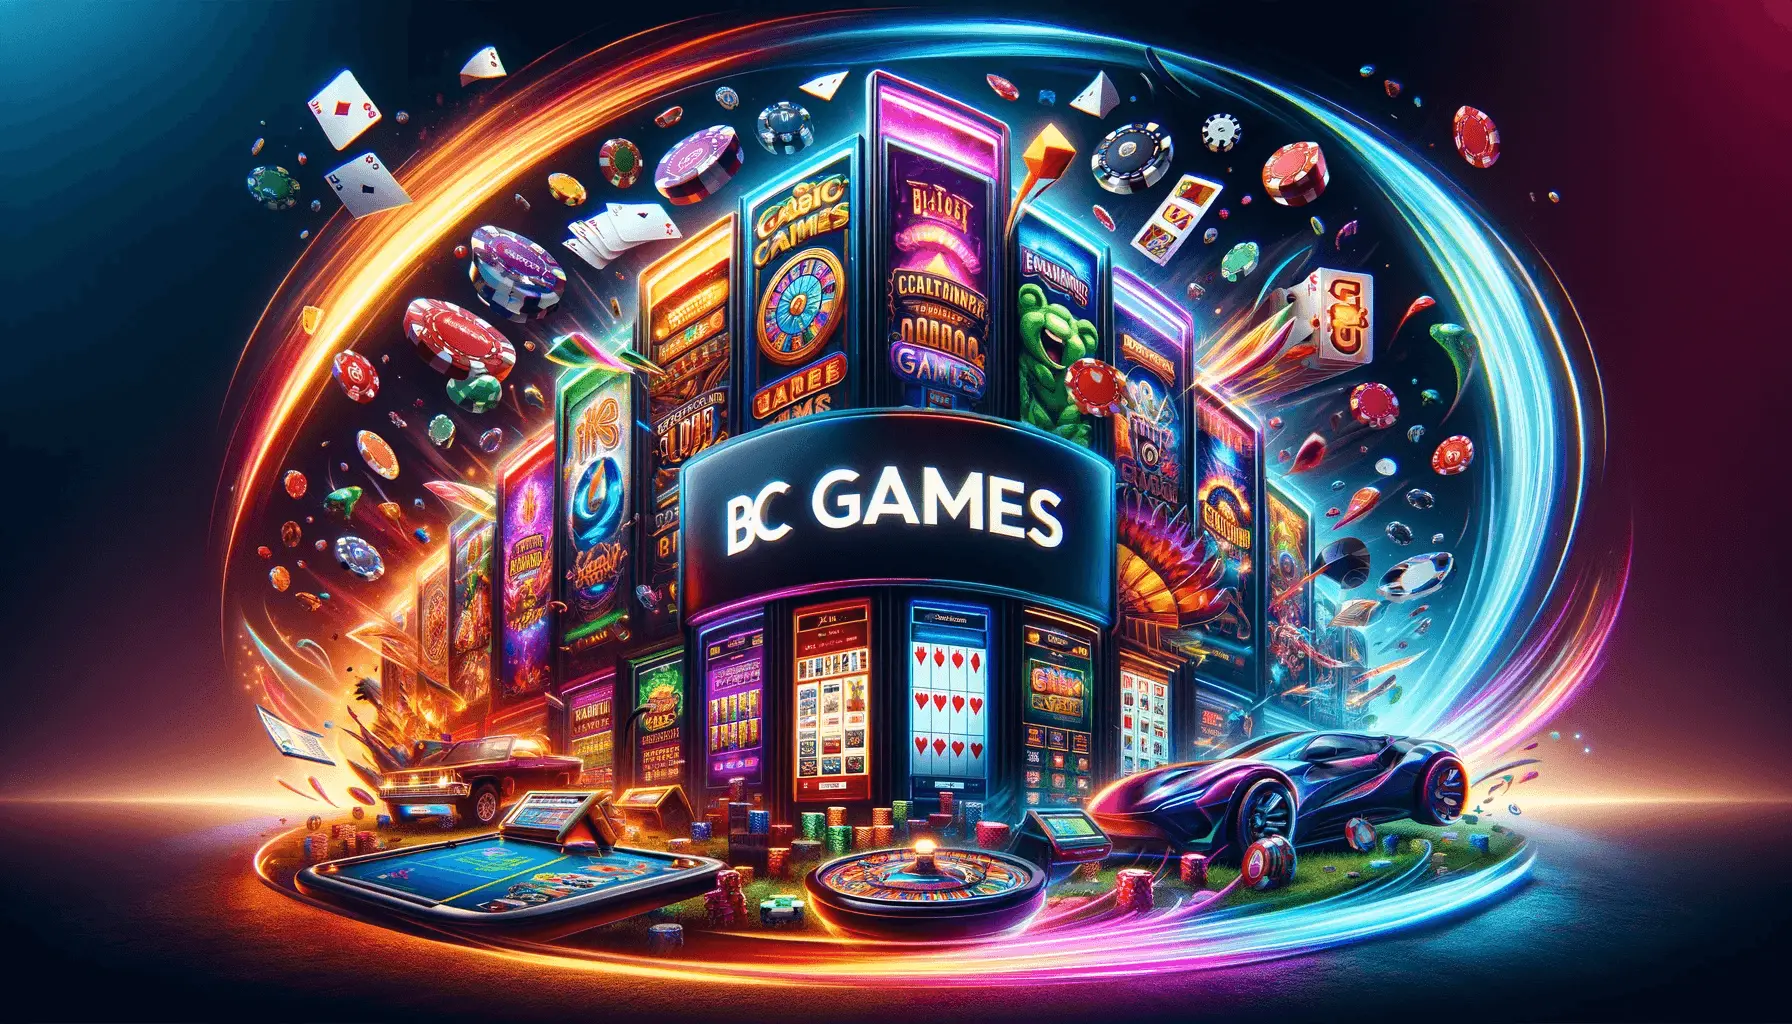 Bannière colorée pour BC Games, illustrant une variété de jeux de casino populaires tels que les machines à sous, le blackjack et le poker, dans un environnement virtuel dynamique et moderne. Le logo de BC Games est mis en évidence au centre, symbolisant une expérience de jeu en ligne passionnante et engageante.